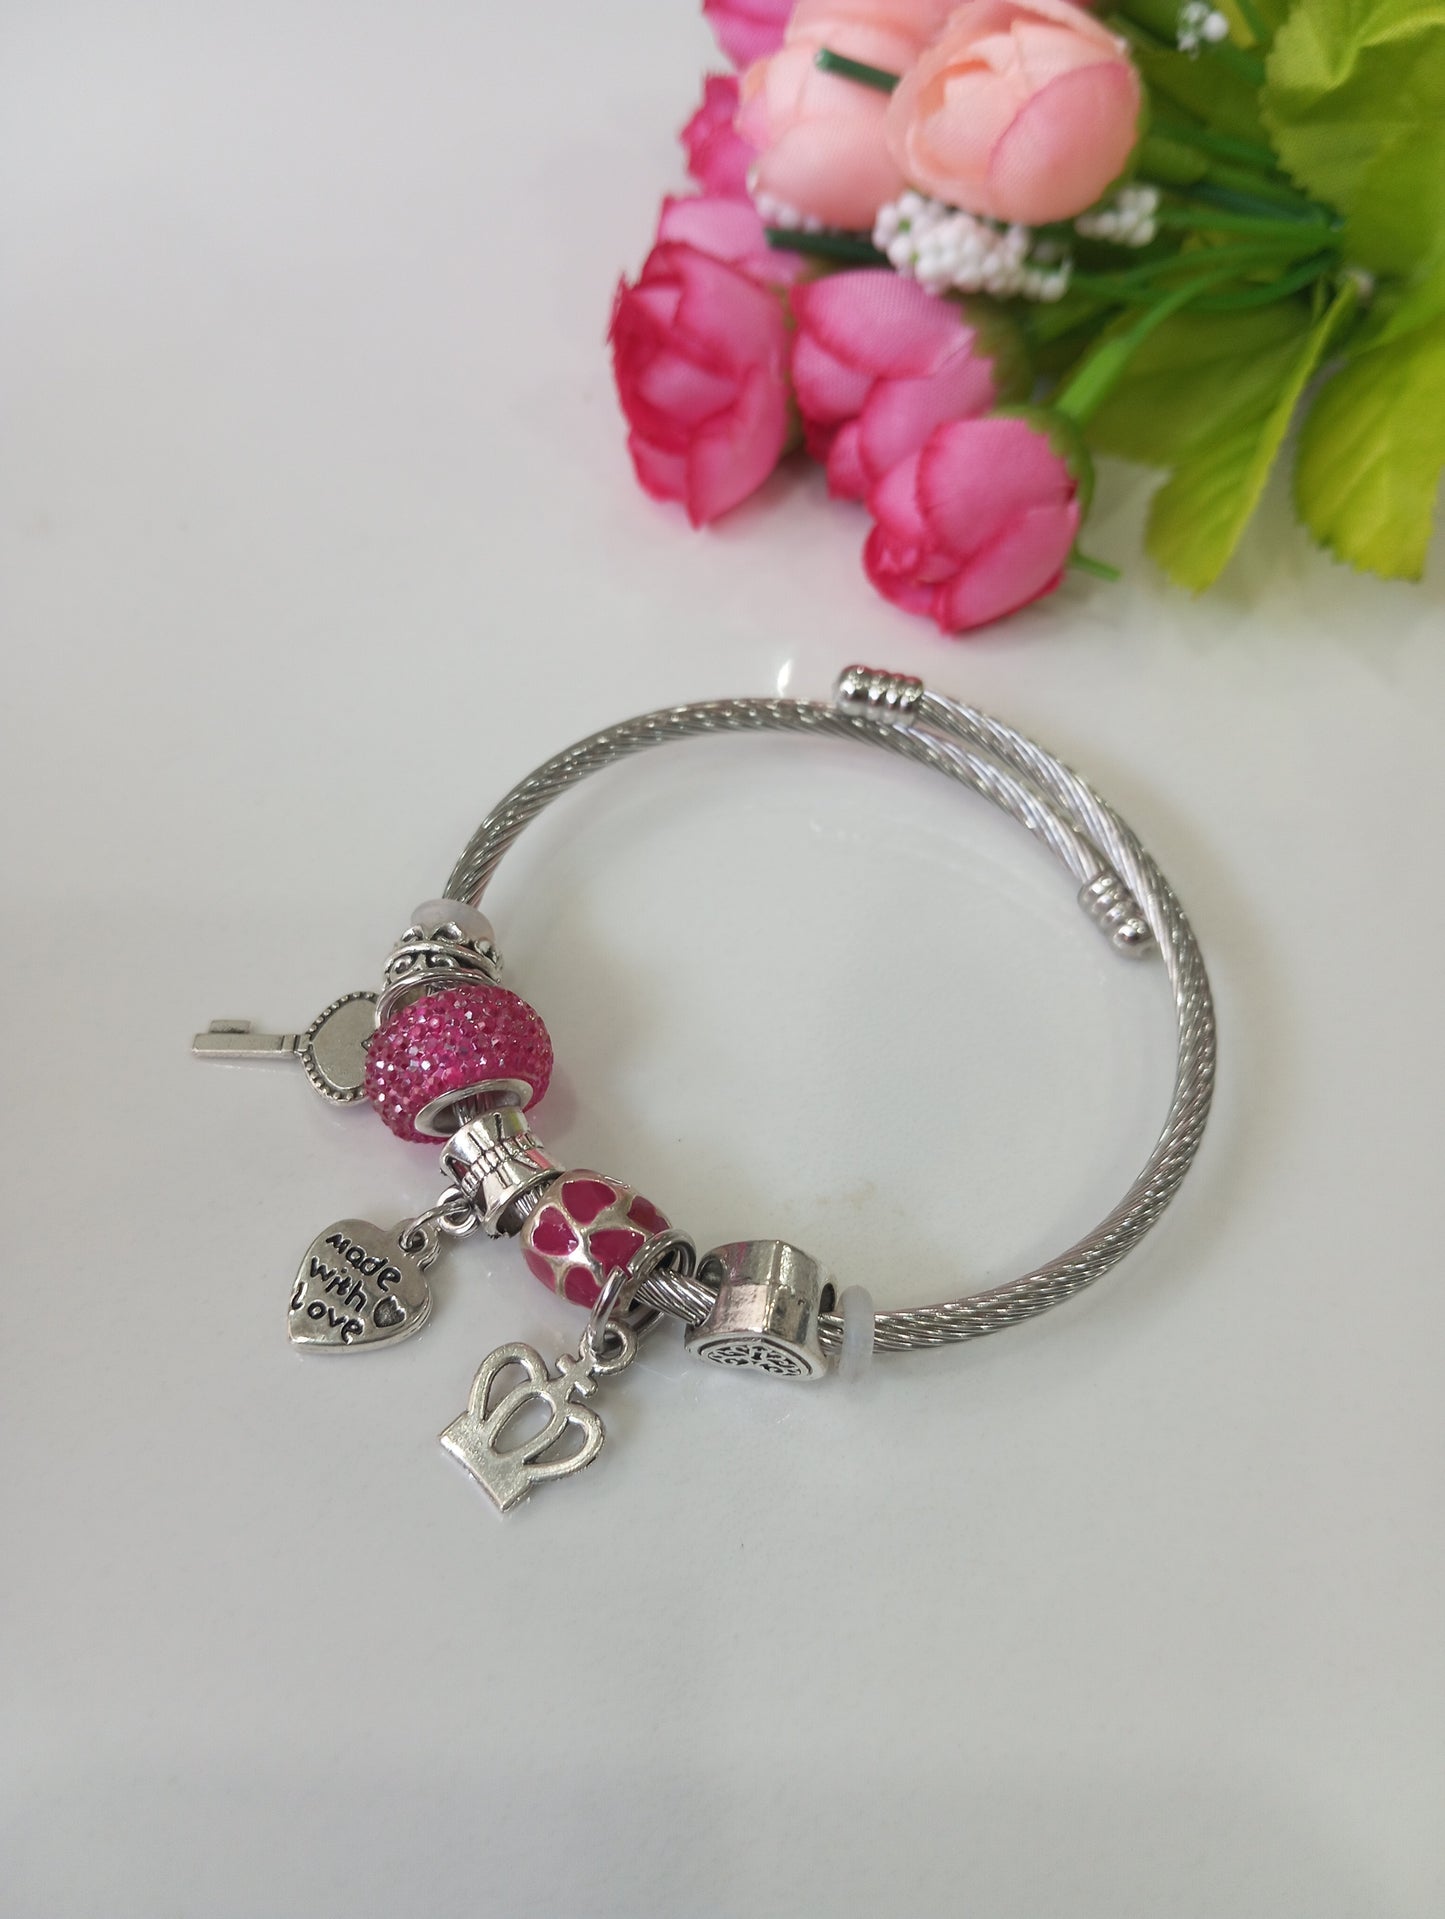 Adjustable Bracelet- Pink and Silver